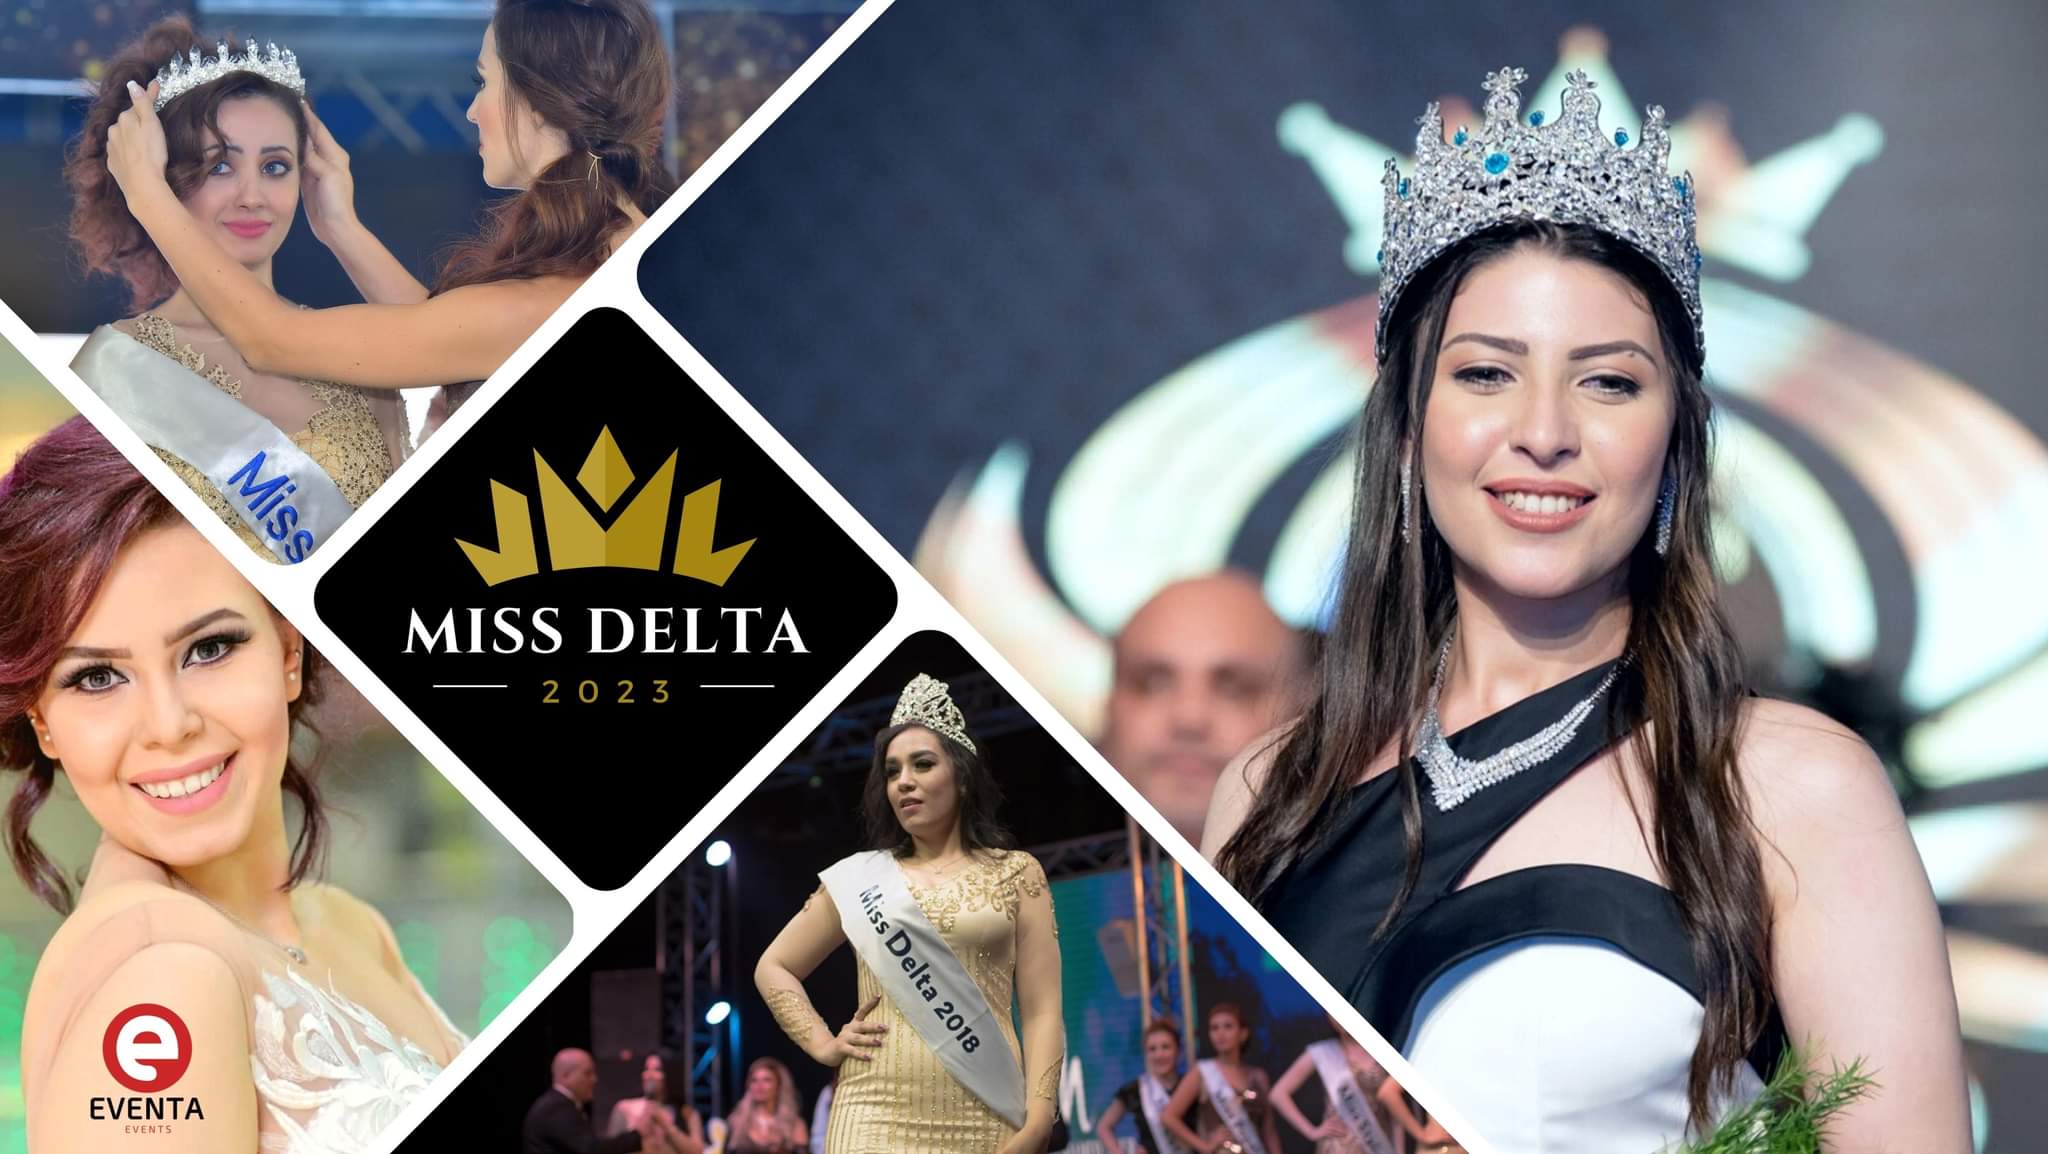 انطلاق مهرجان مسابقة مس دلتا مرة أخرى بالقاهرة 